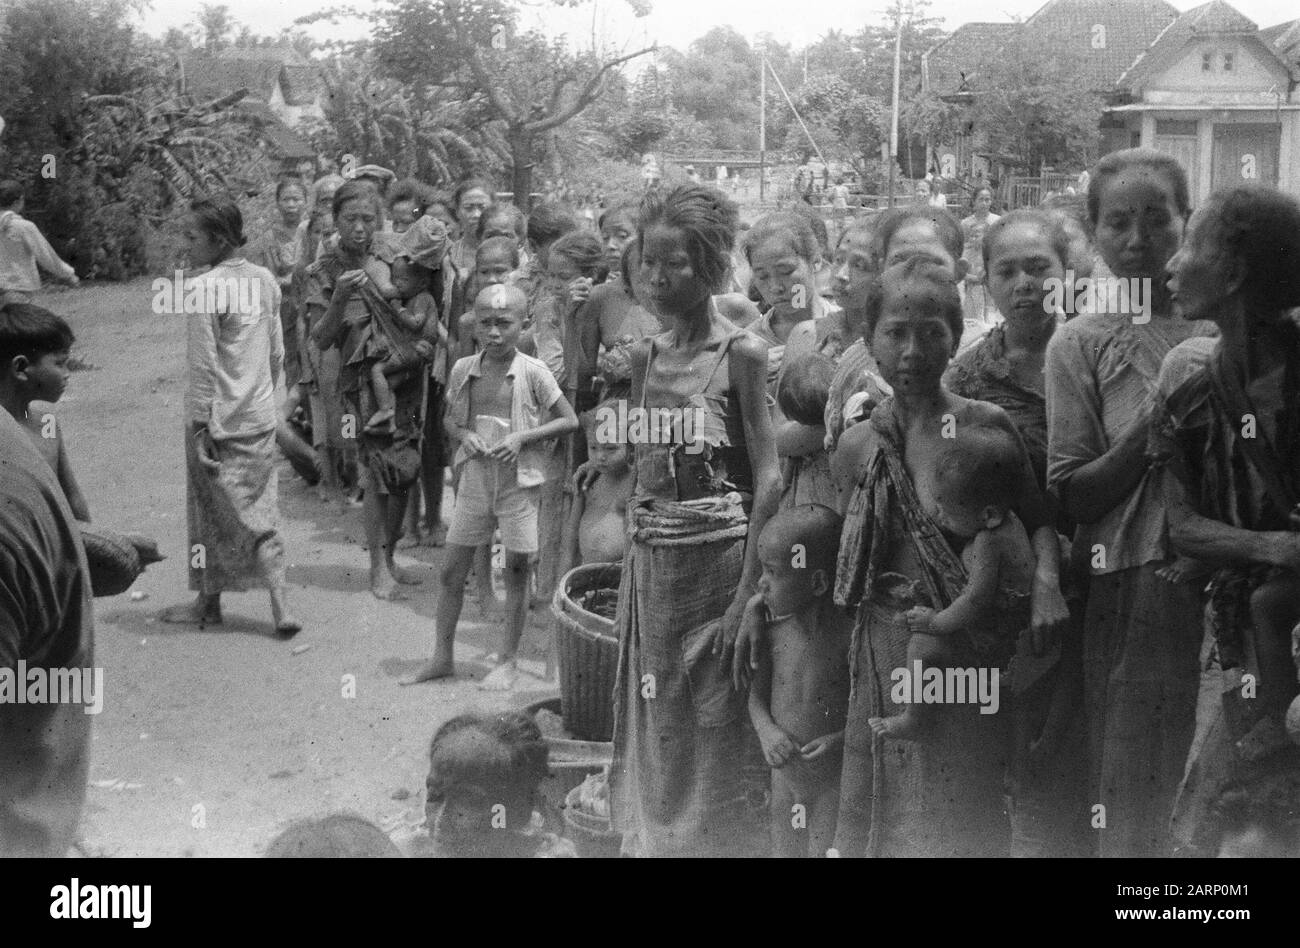 Djombangs, Surabaya Aus Djombangs fährt täglich ein Lastwagen mit Evakuierten nach Modjokerto und Surabaya. Diese Personen flüchteten während der ersten Polizeiaktion ins Landesinnere, die in der Regel von der TNI erzwungen wurde. Sie kehren nun gerne in ihre Kernstädte zurück, was auch durch die Pflege des Roten Kreuzes und der sozialen Angelegenheiten geschieht. Die arme Bevölkerung brauchte Lebensmittel und Kleidung. Hier stehen sie in Reihe und warten auf die Dinge bis zum Datum: Februar 1949 Ort: Indonesien, Java, Niederländische Ostindien Stockfoto